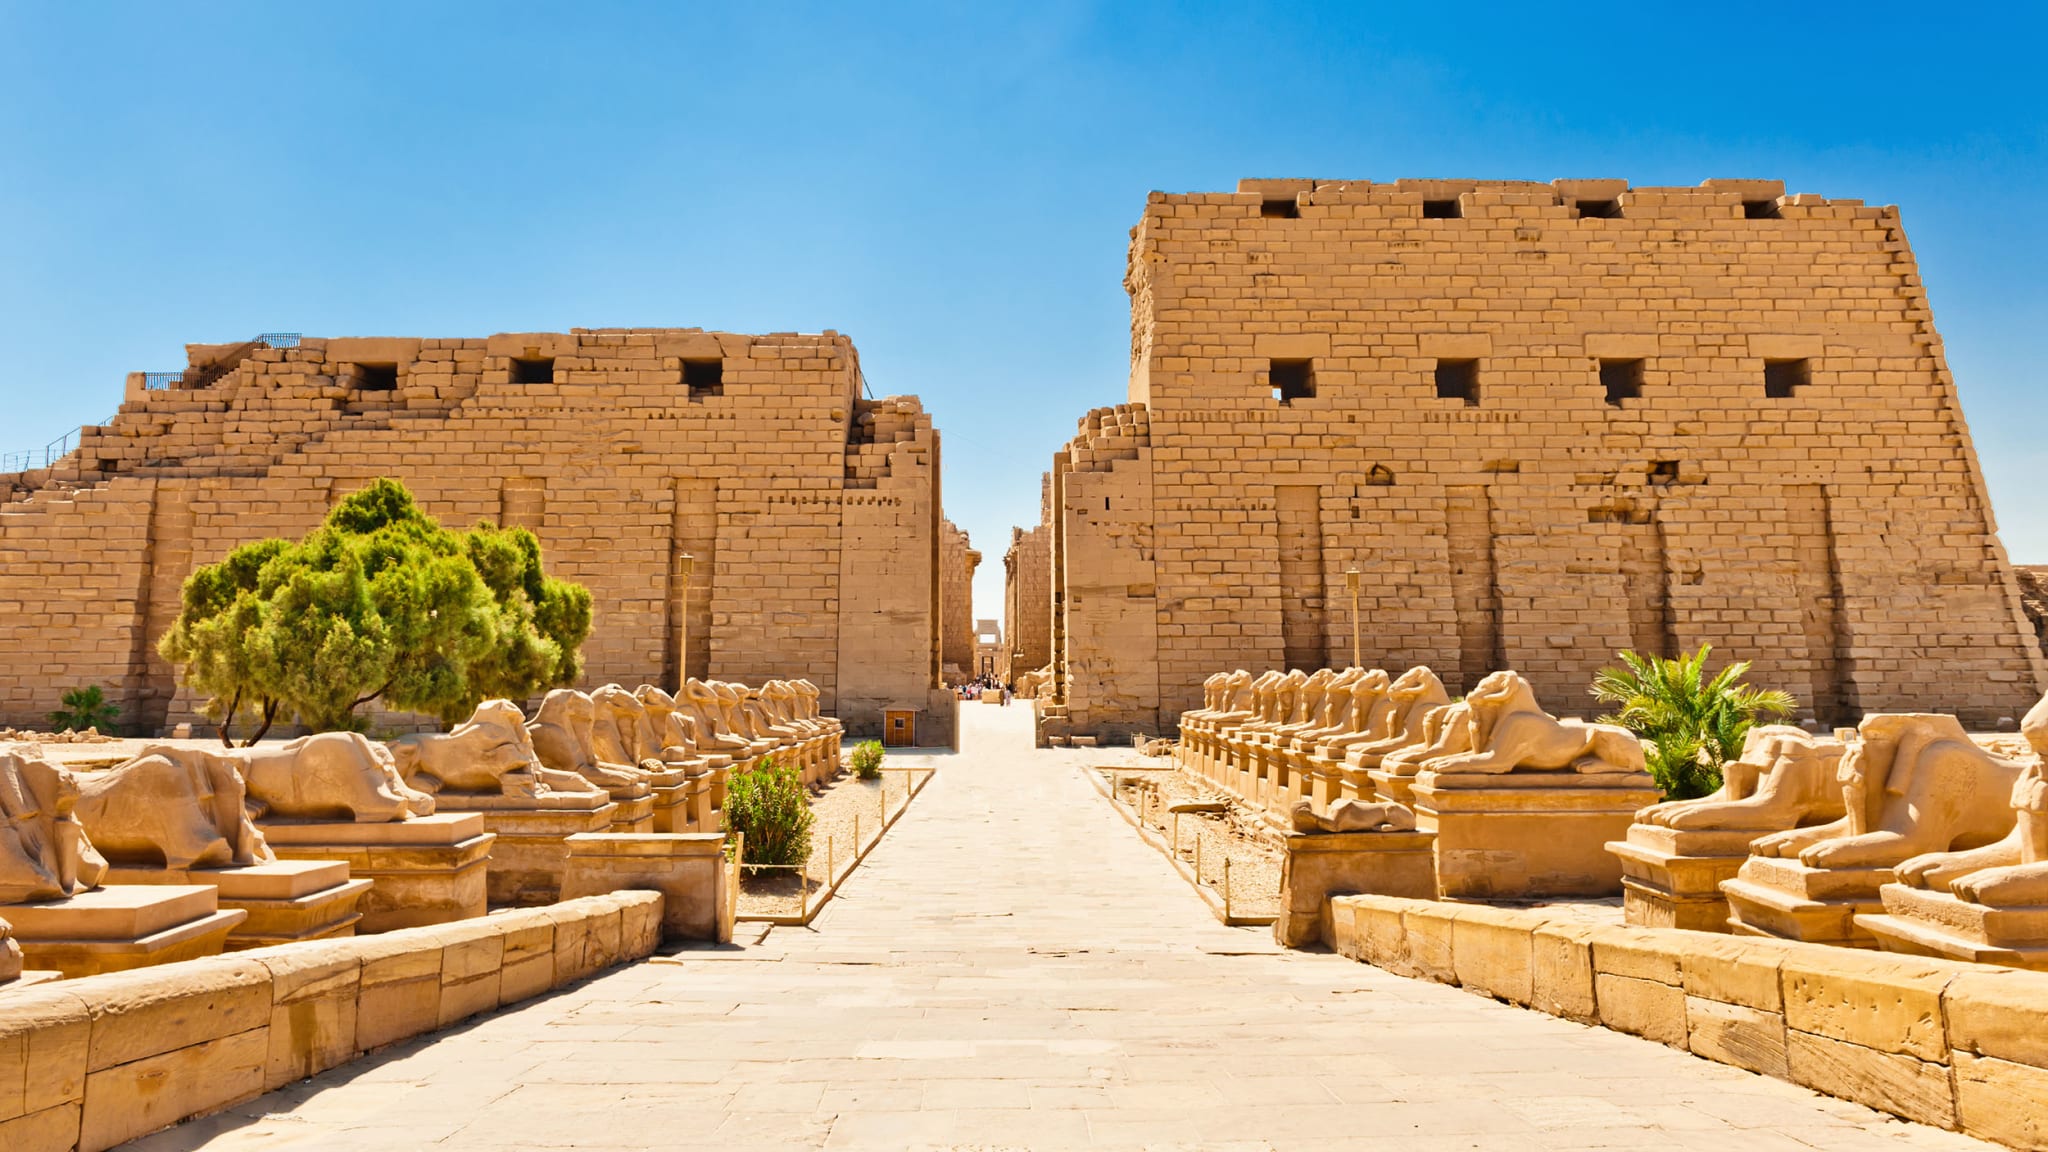 Blick auf den Karnak Tempel in Luxor, Ägypten, mit der Allee mit Sphinxen